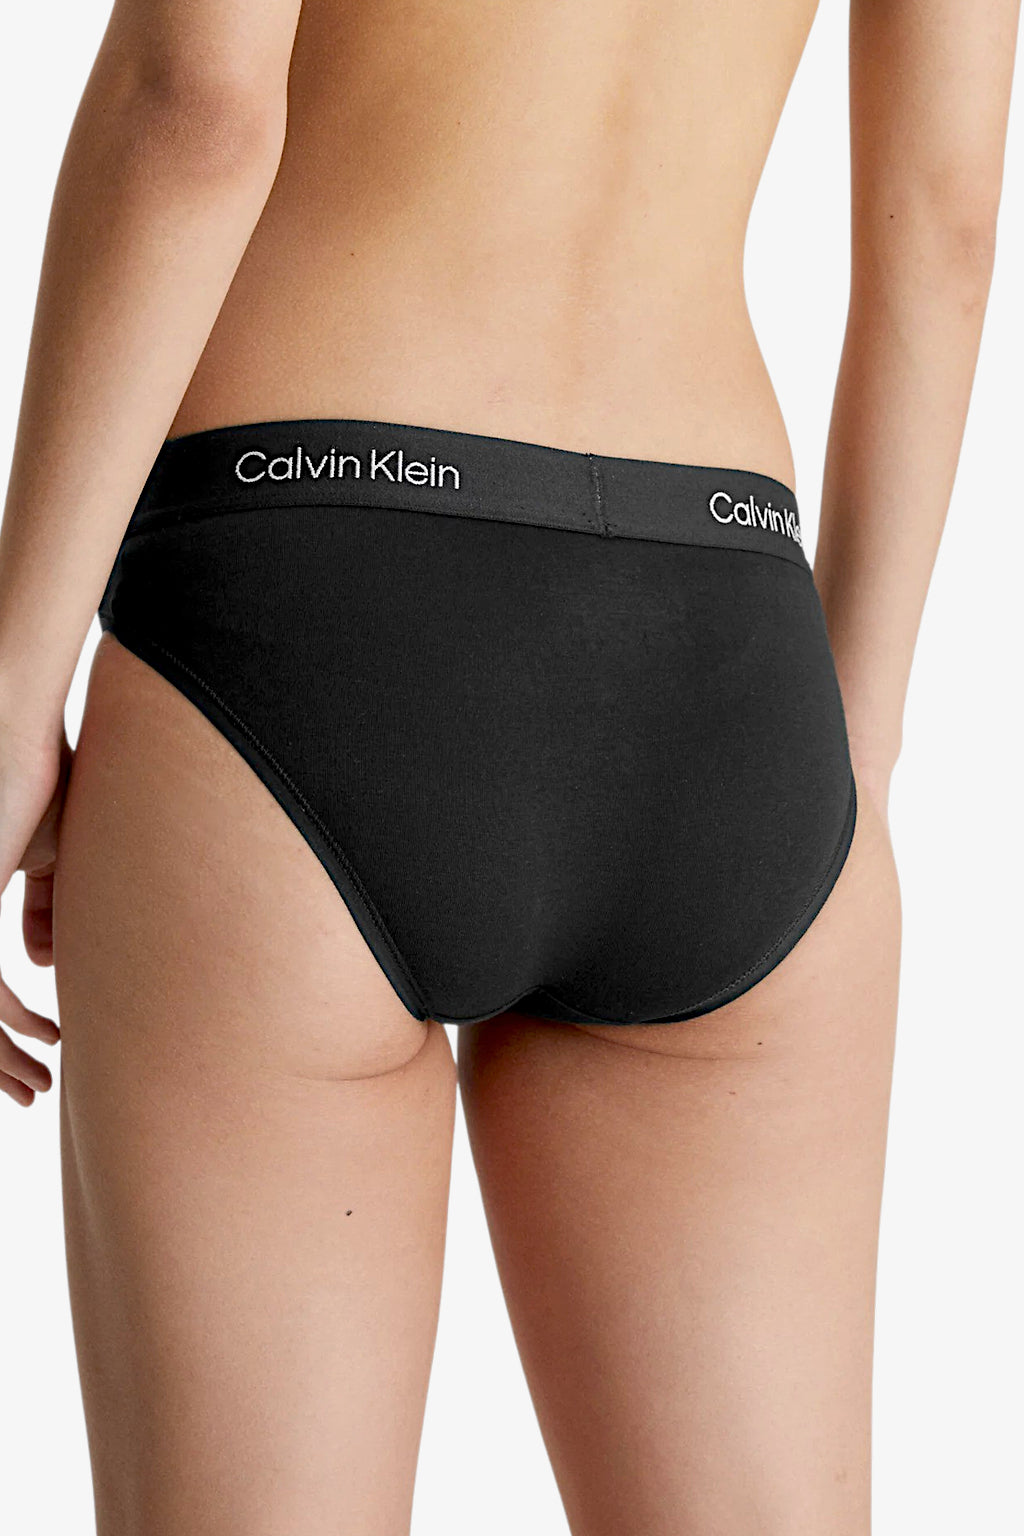 Mutande Calvin Klein donna  Ordina online su ABOUT YOU